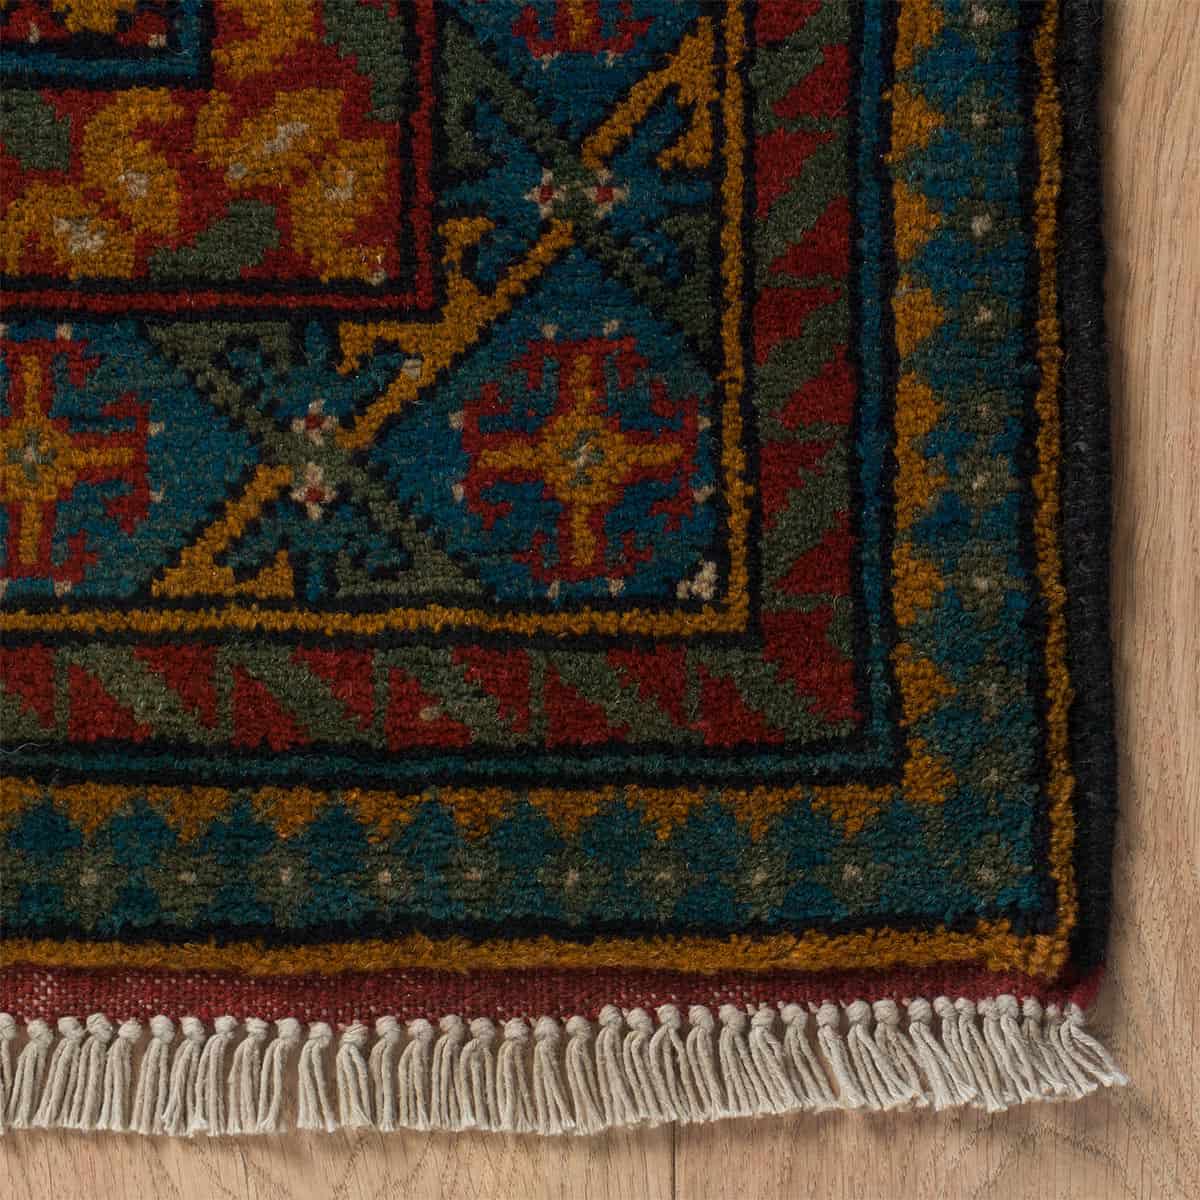 אחצ'ה דוגמה מיוחדת 00 צבעוני 105x146 | השטיח האדום